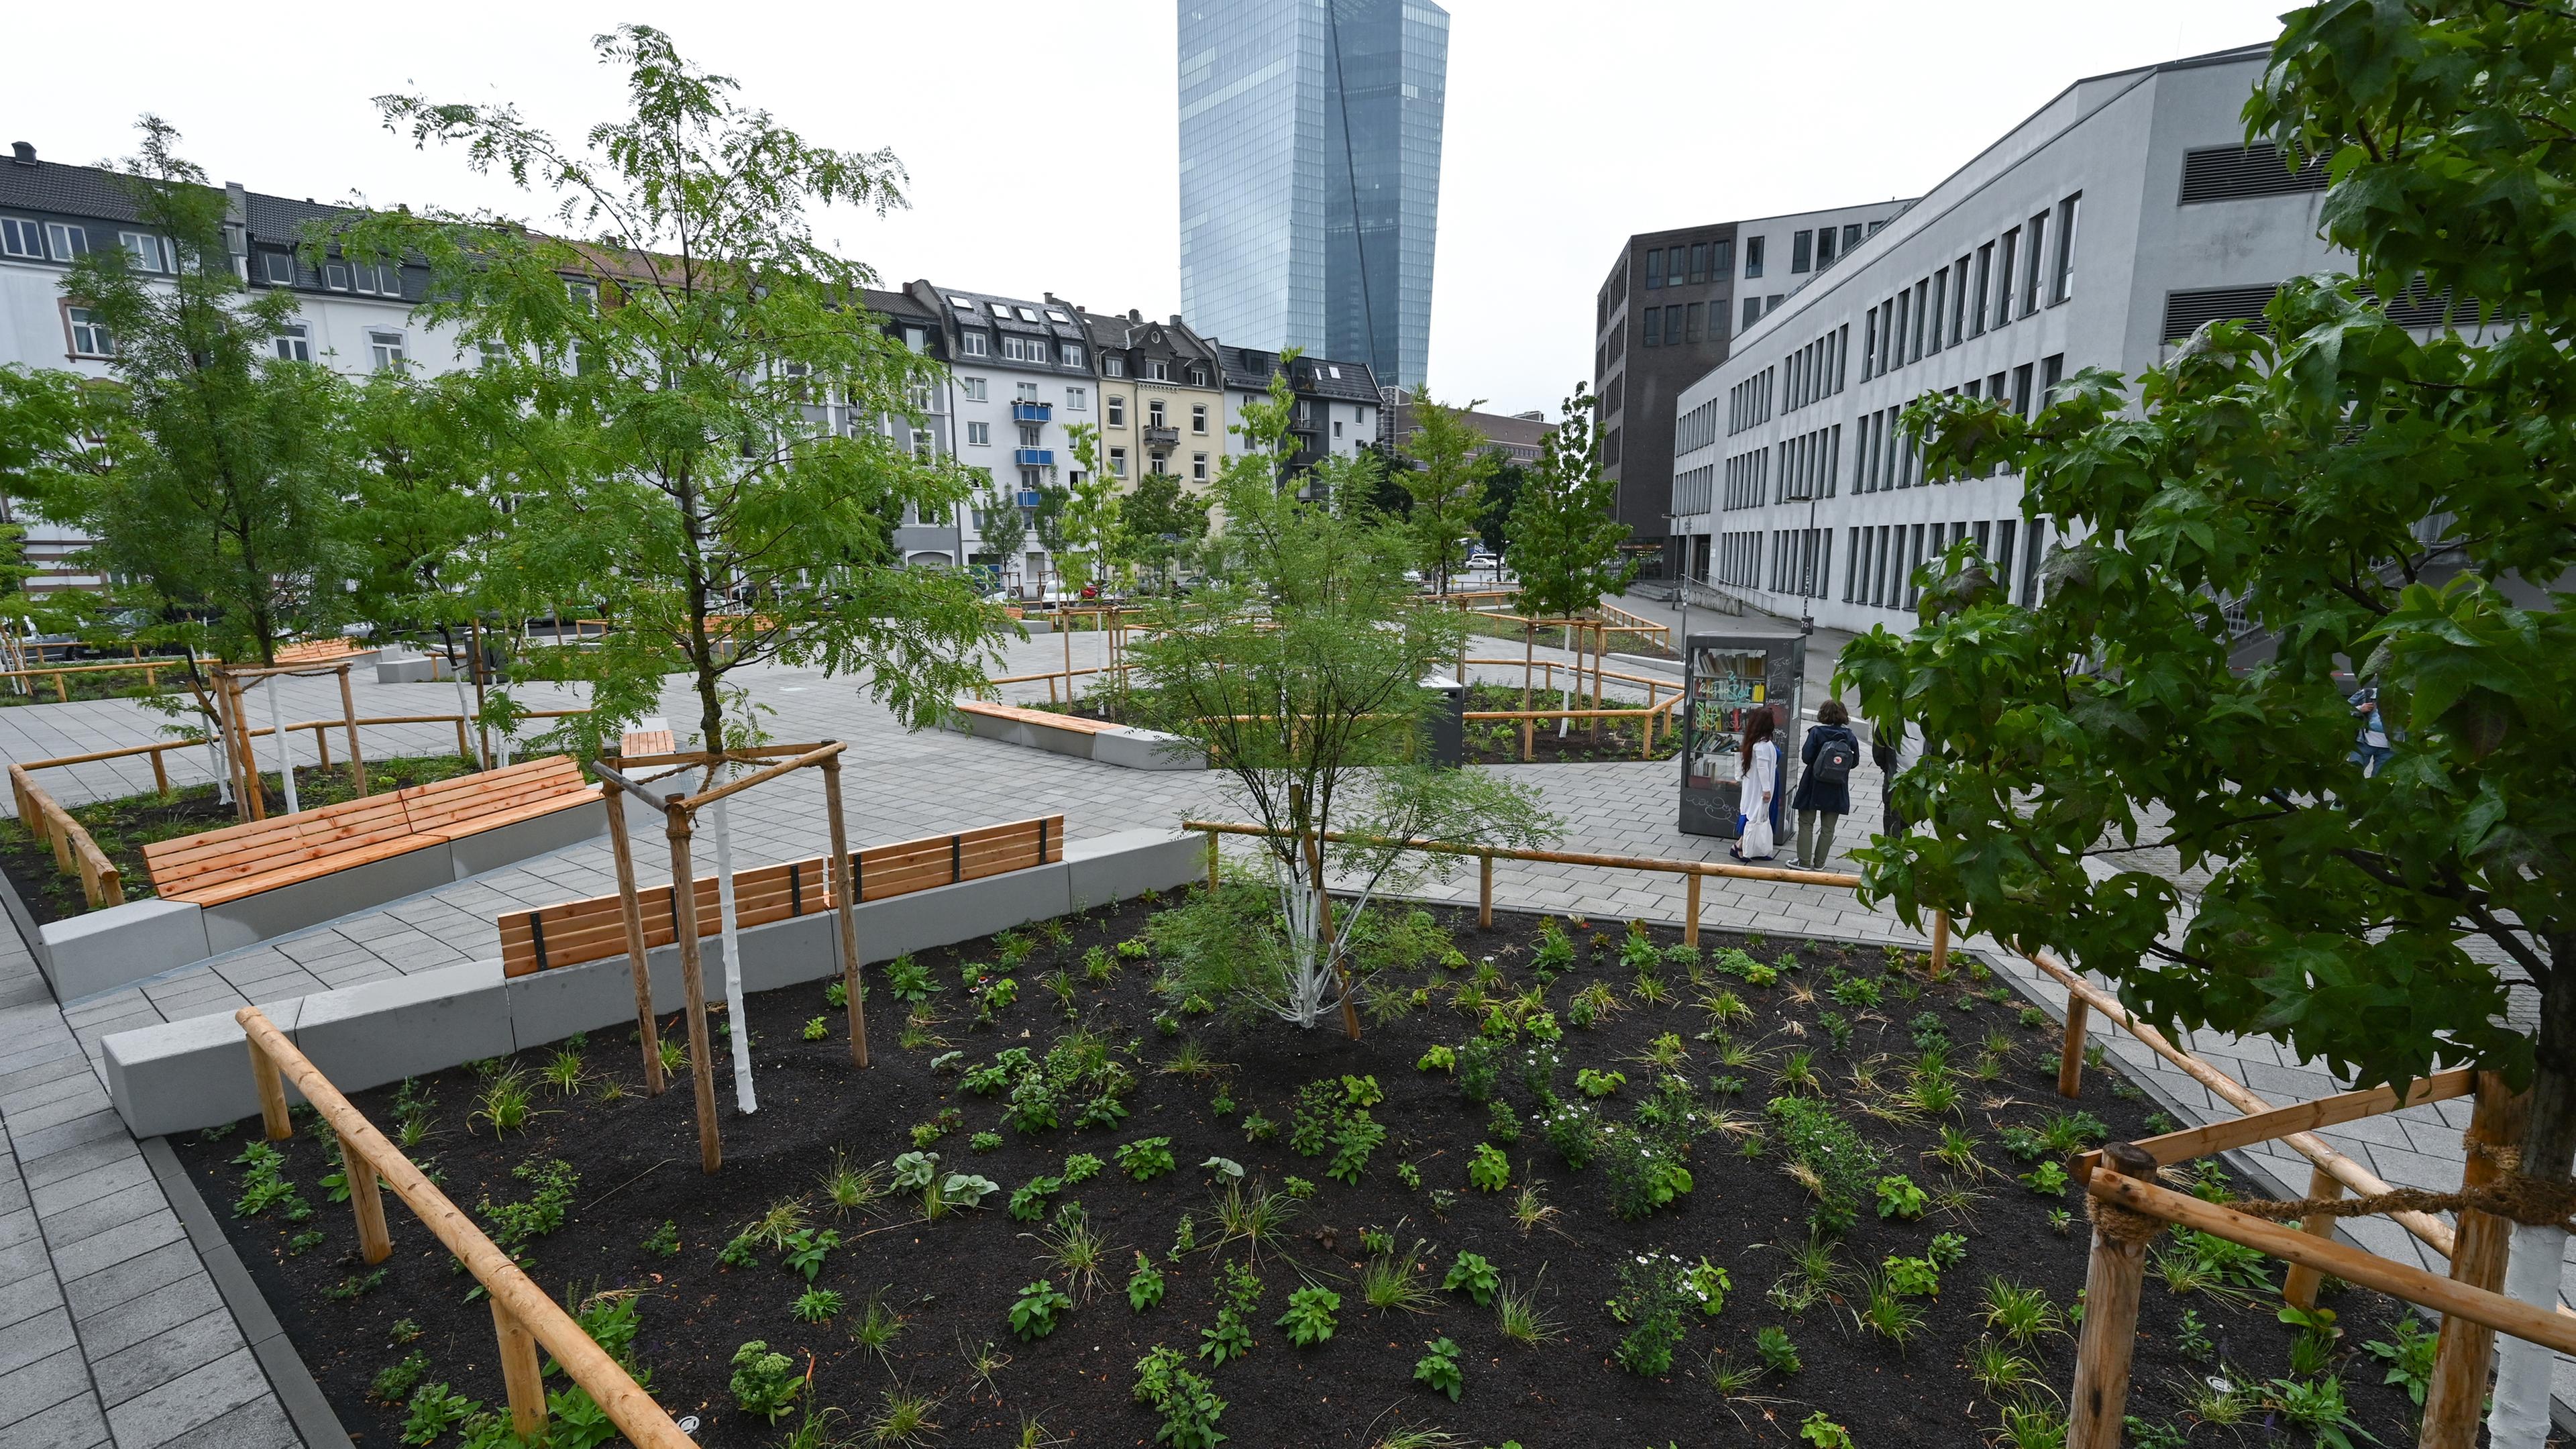 Mit neuen Grünflächen und Bäumen präsentiert sich der Paul-Arnsberg-Platz im Frankfurter Stadtteil Ostend nach der klimafreundlichen Umgestaltung.